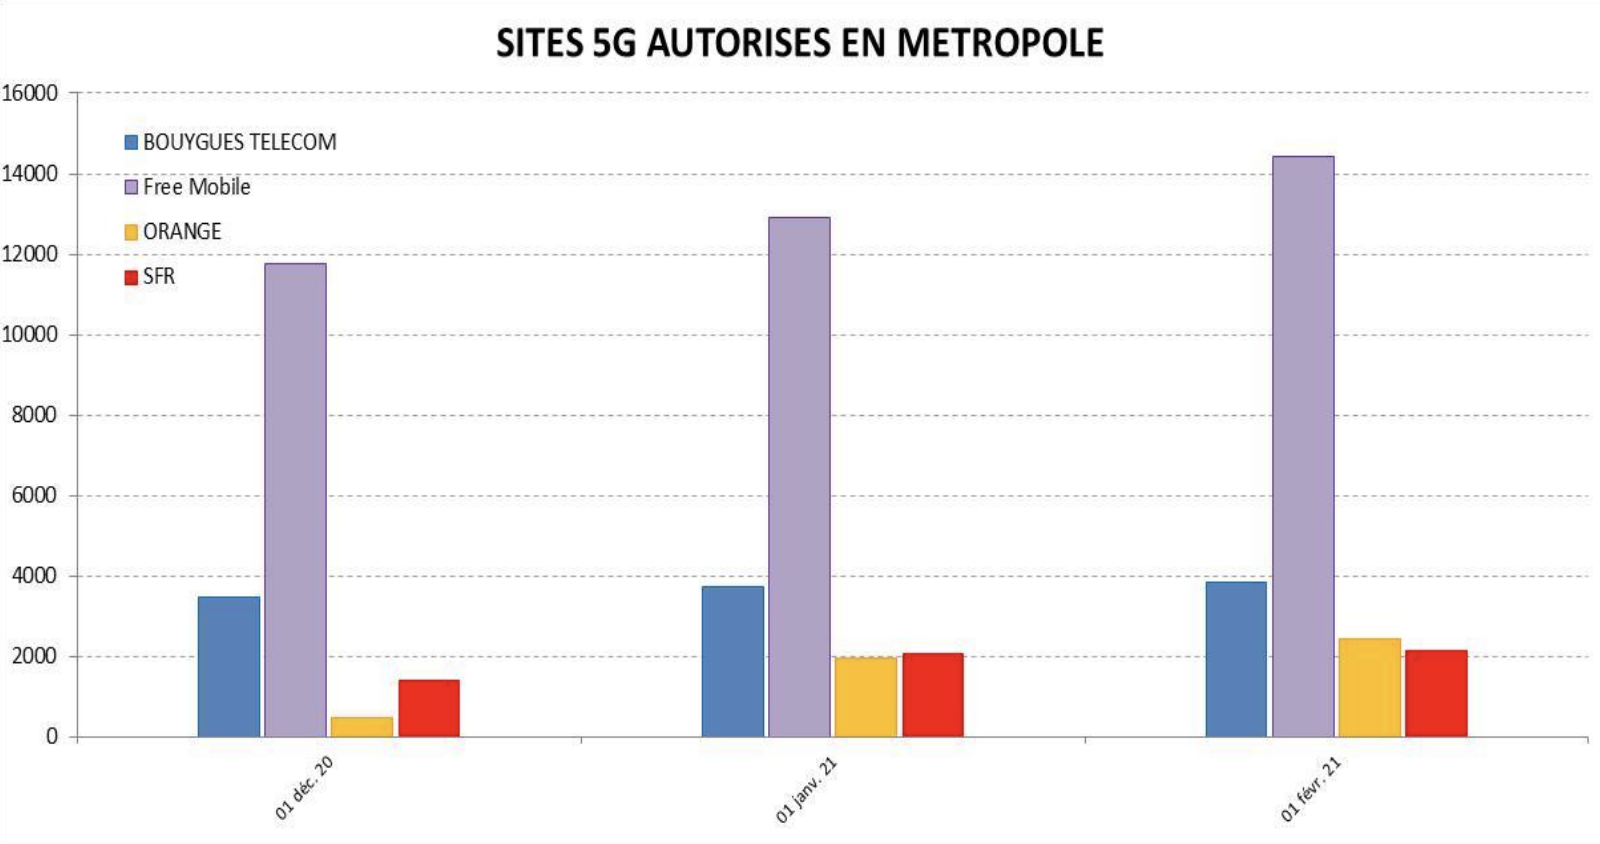 Historique des sites 5G autorisés en métropole, par opérateur depuis décembre 2020 © ANFR